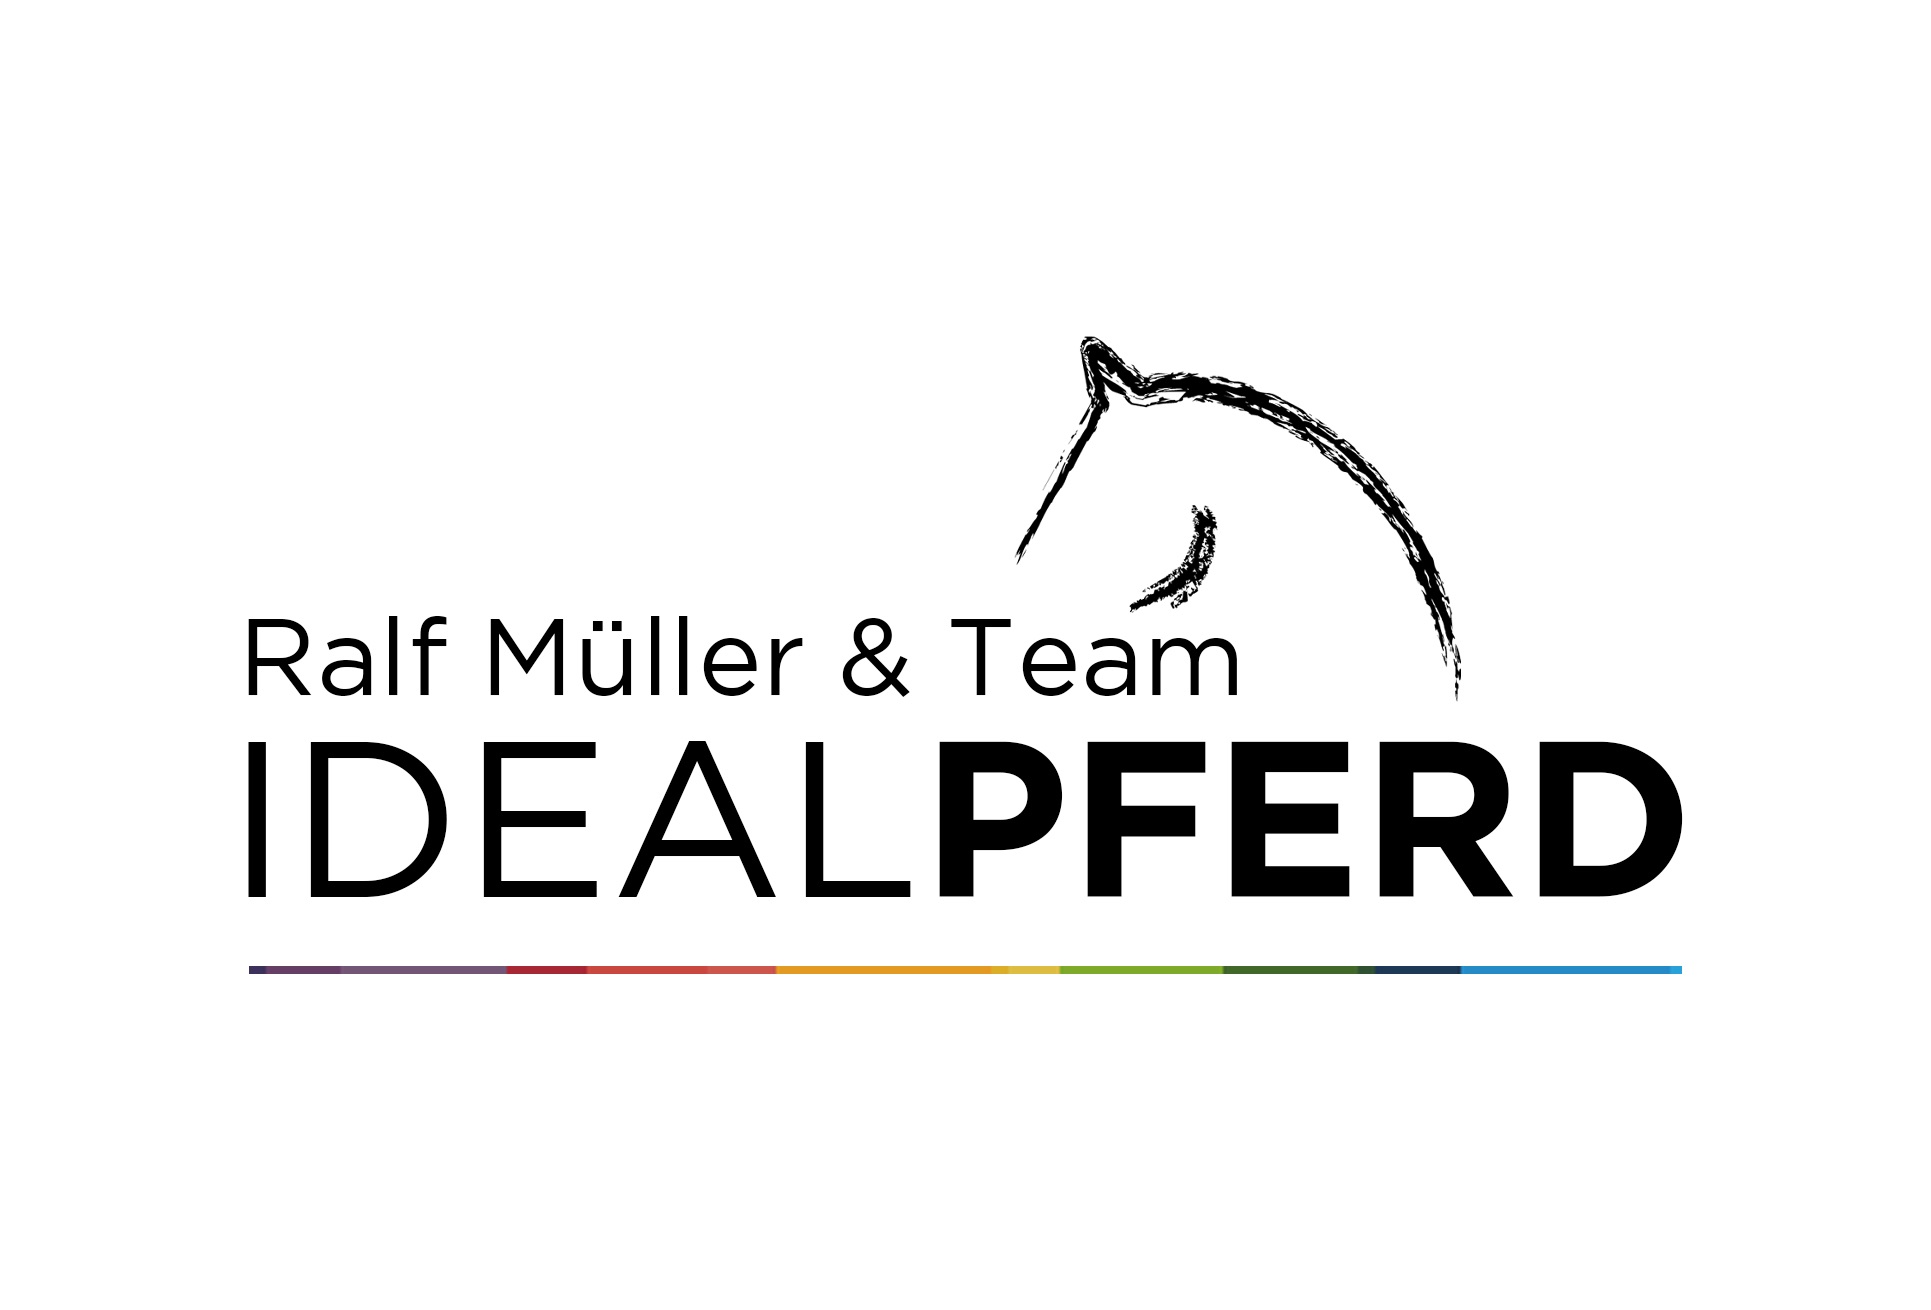 Ralf Müller & Team Idealpferd